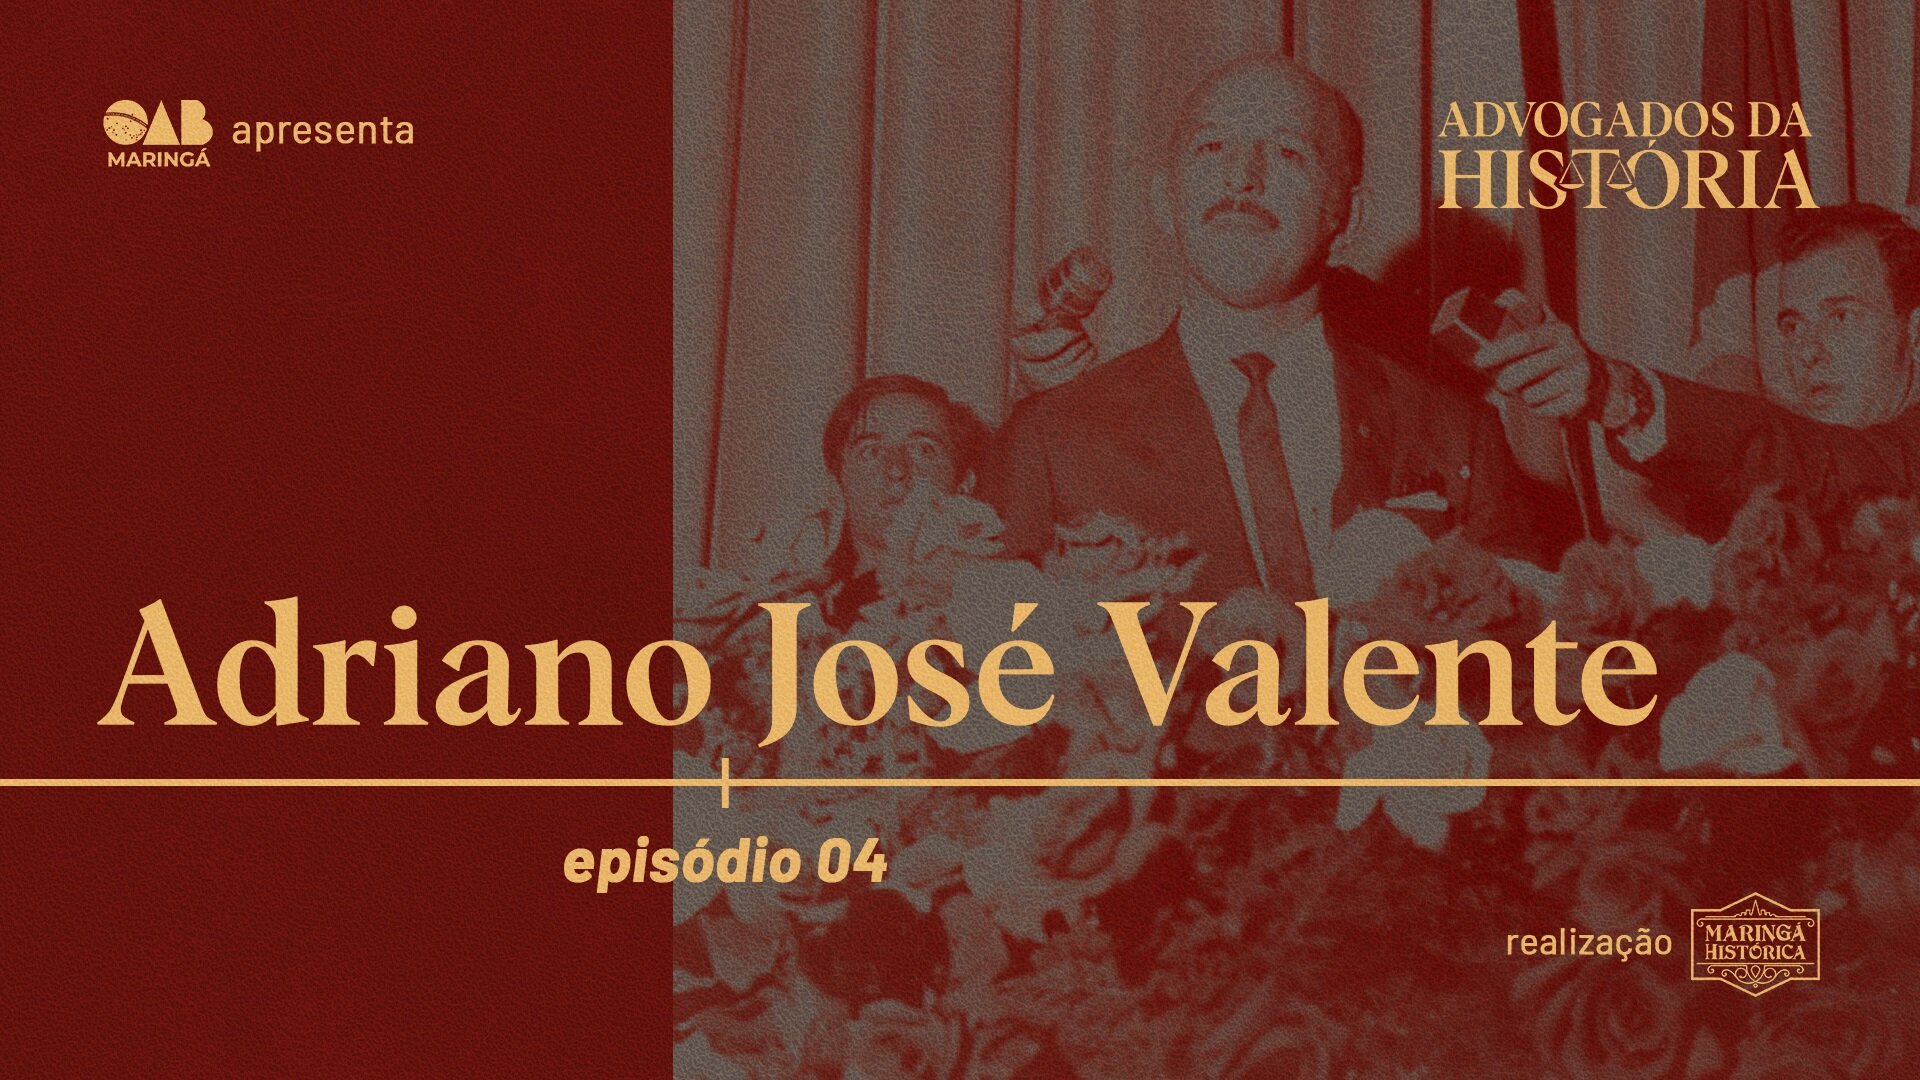 ADVOGADOS DA HISTÓRIA: Adriano José Valente